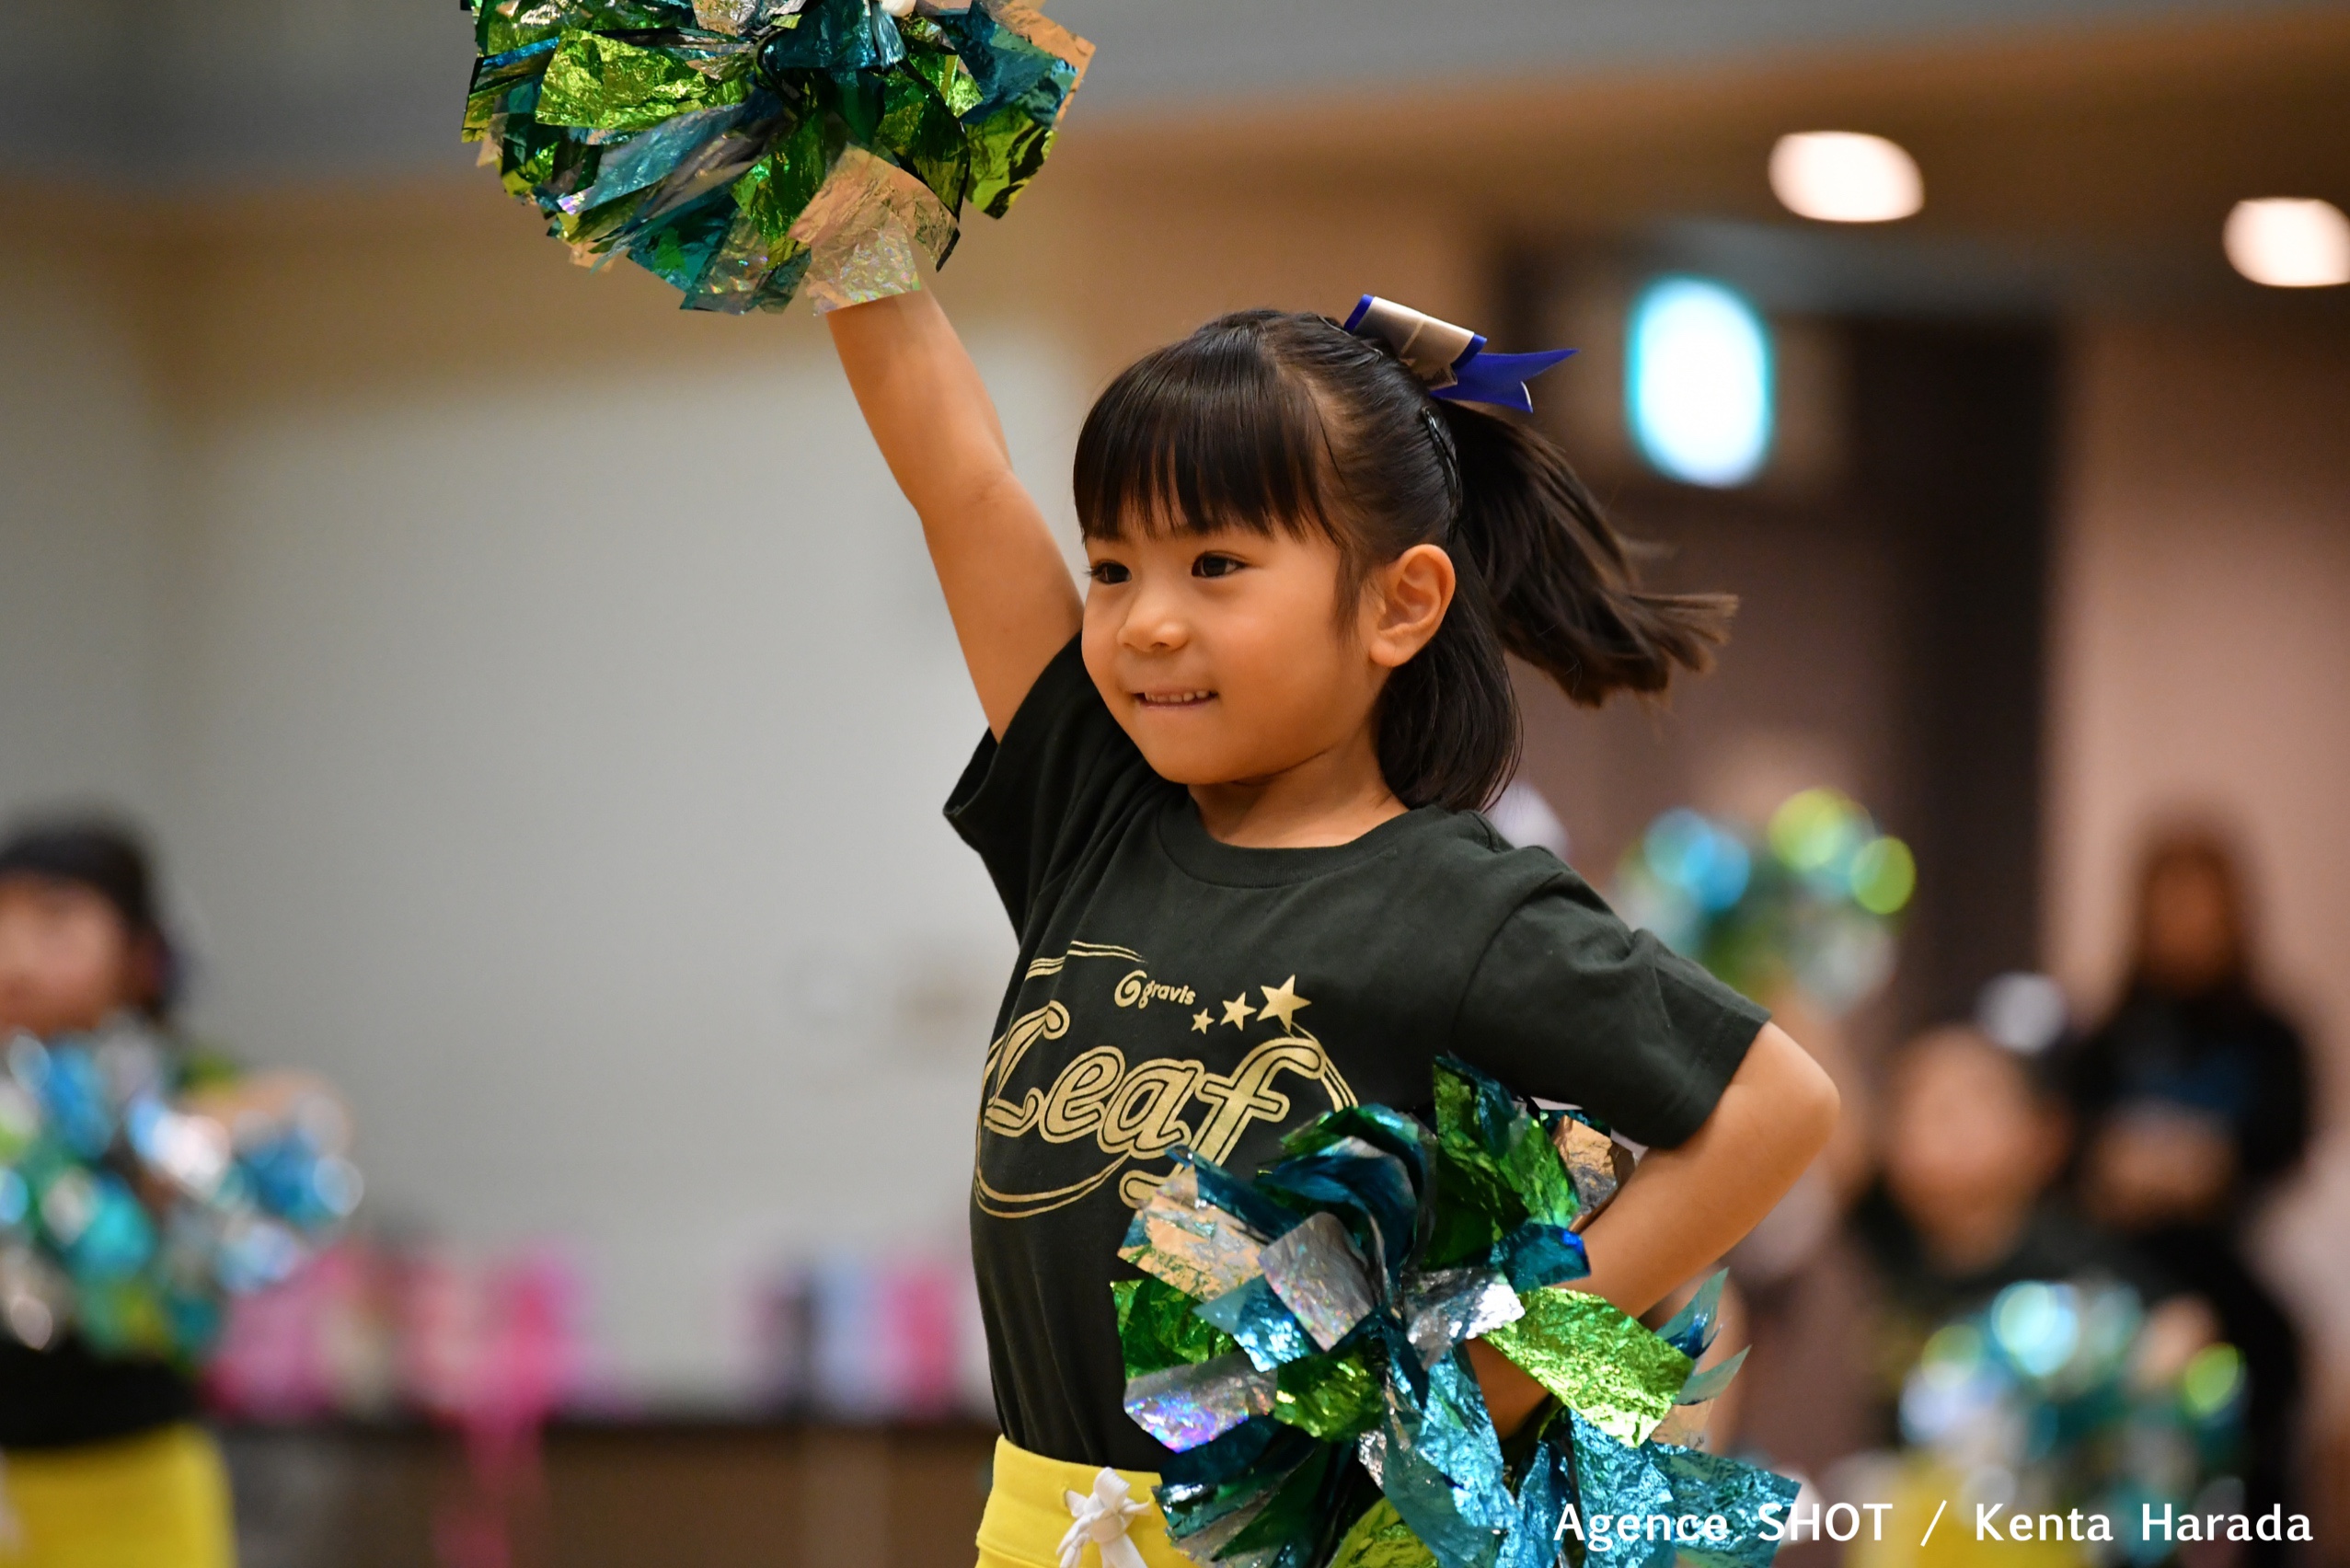 キッズダンスの時のヘアスタイル ボブ編 Gravis 神奈川 東京で人気のチア キッズチアダンススクール